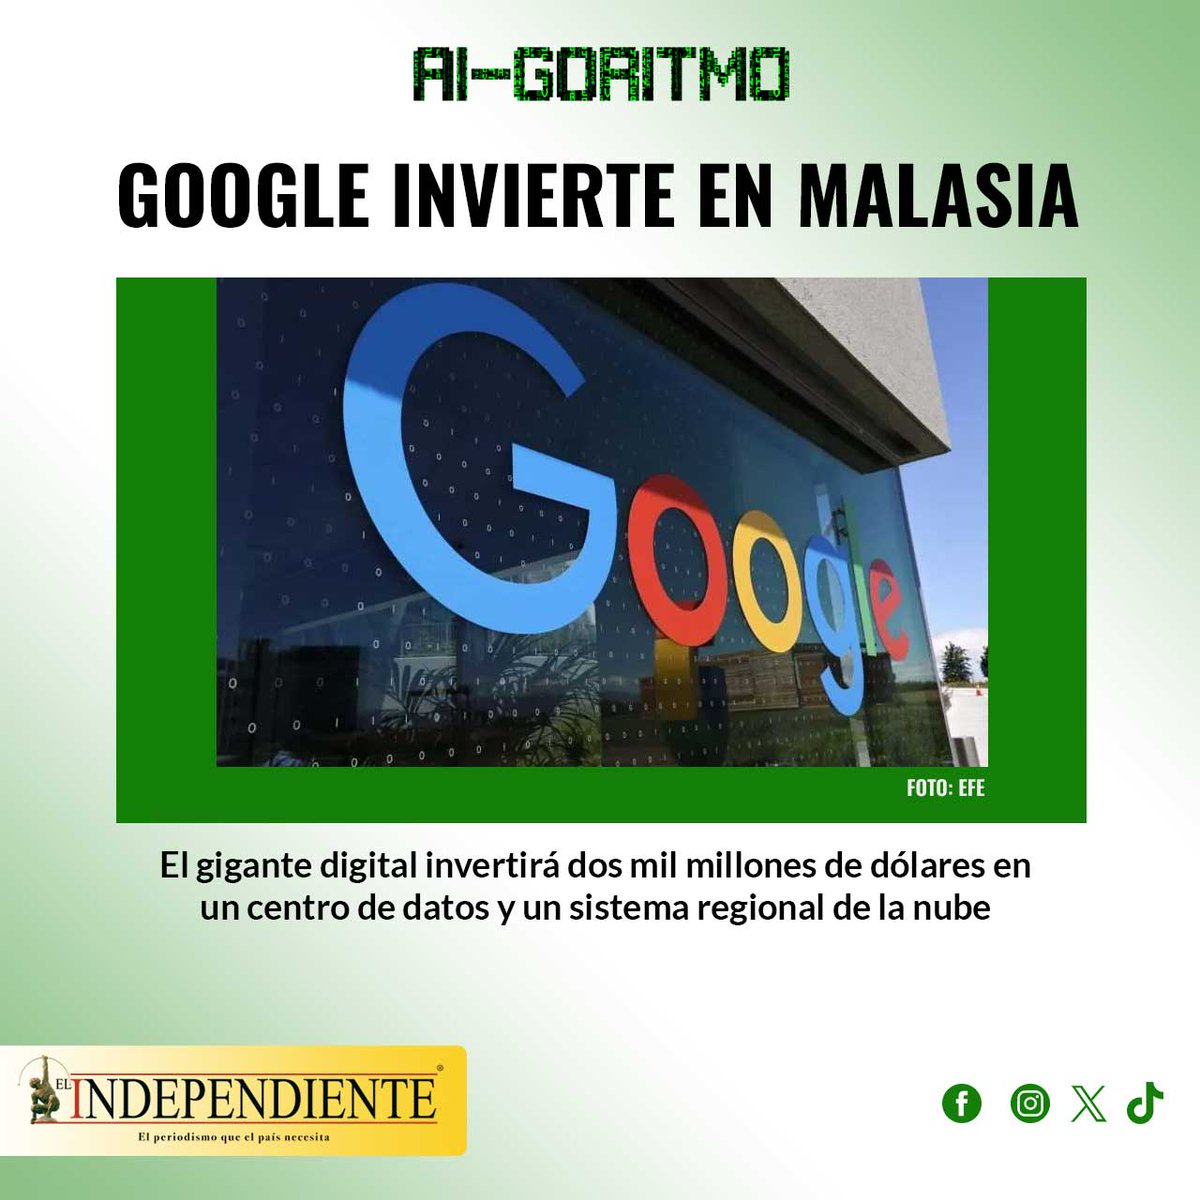 #AIgoritmo Google anuncia inversión de miles de millones de dólares en Malasia
Sigue la tecnología 💻 Link en bio